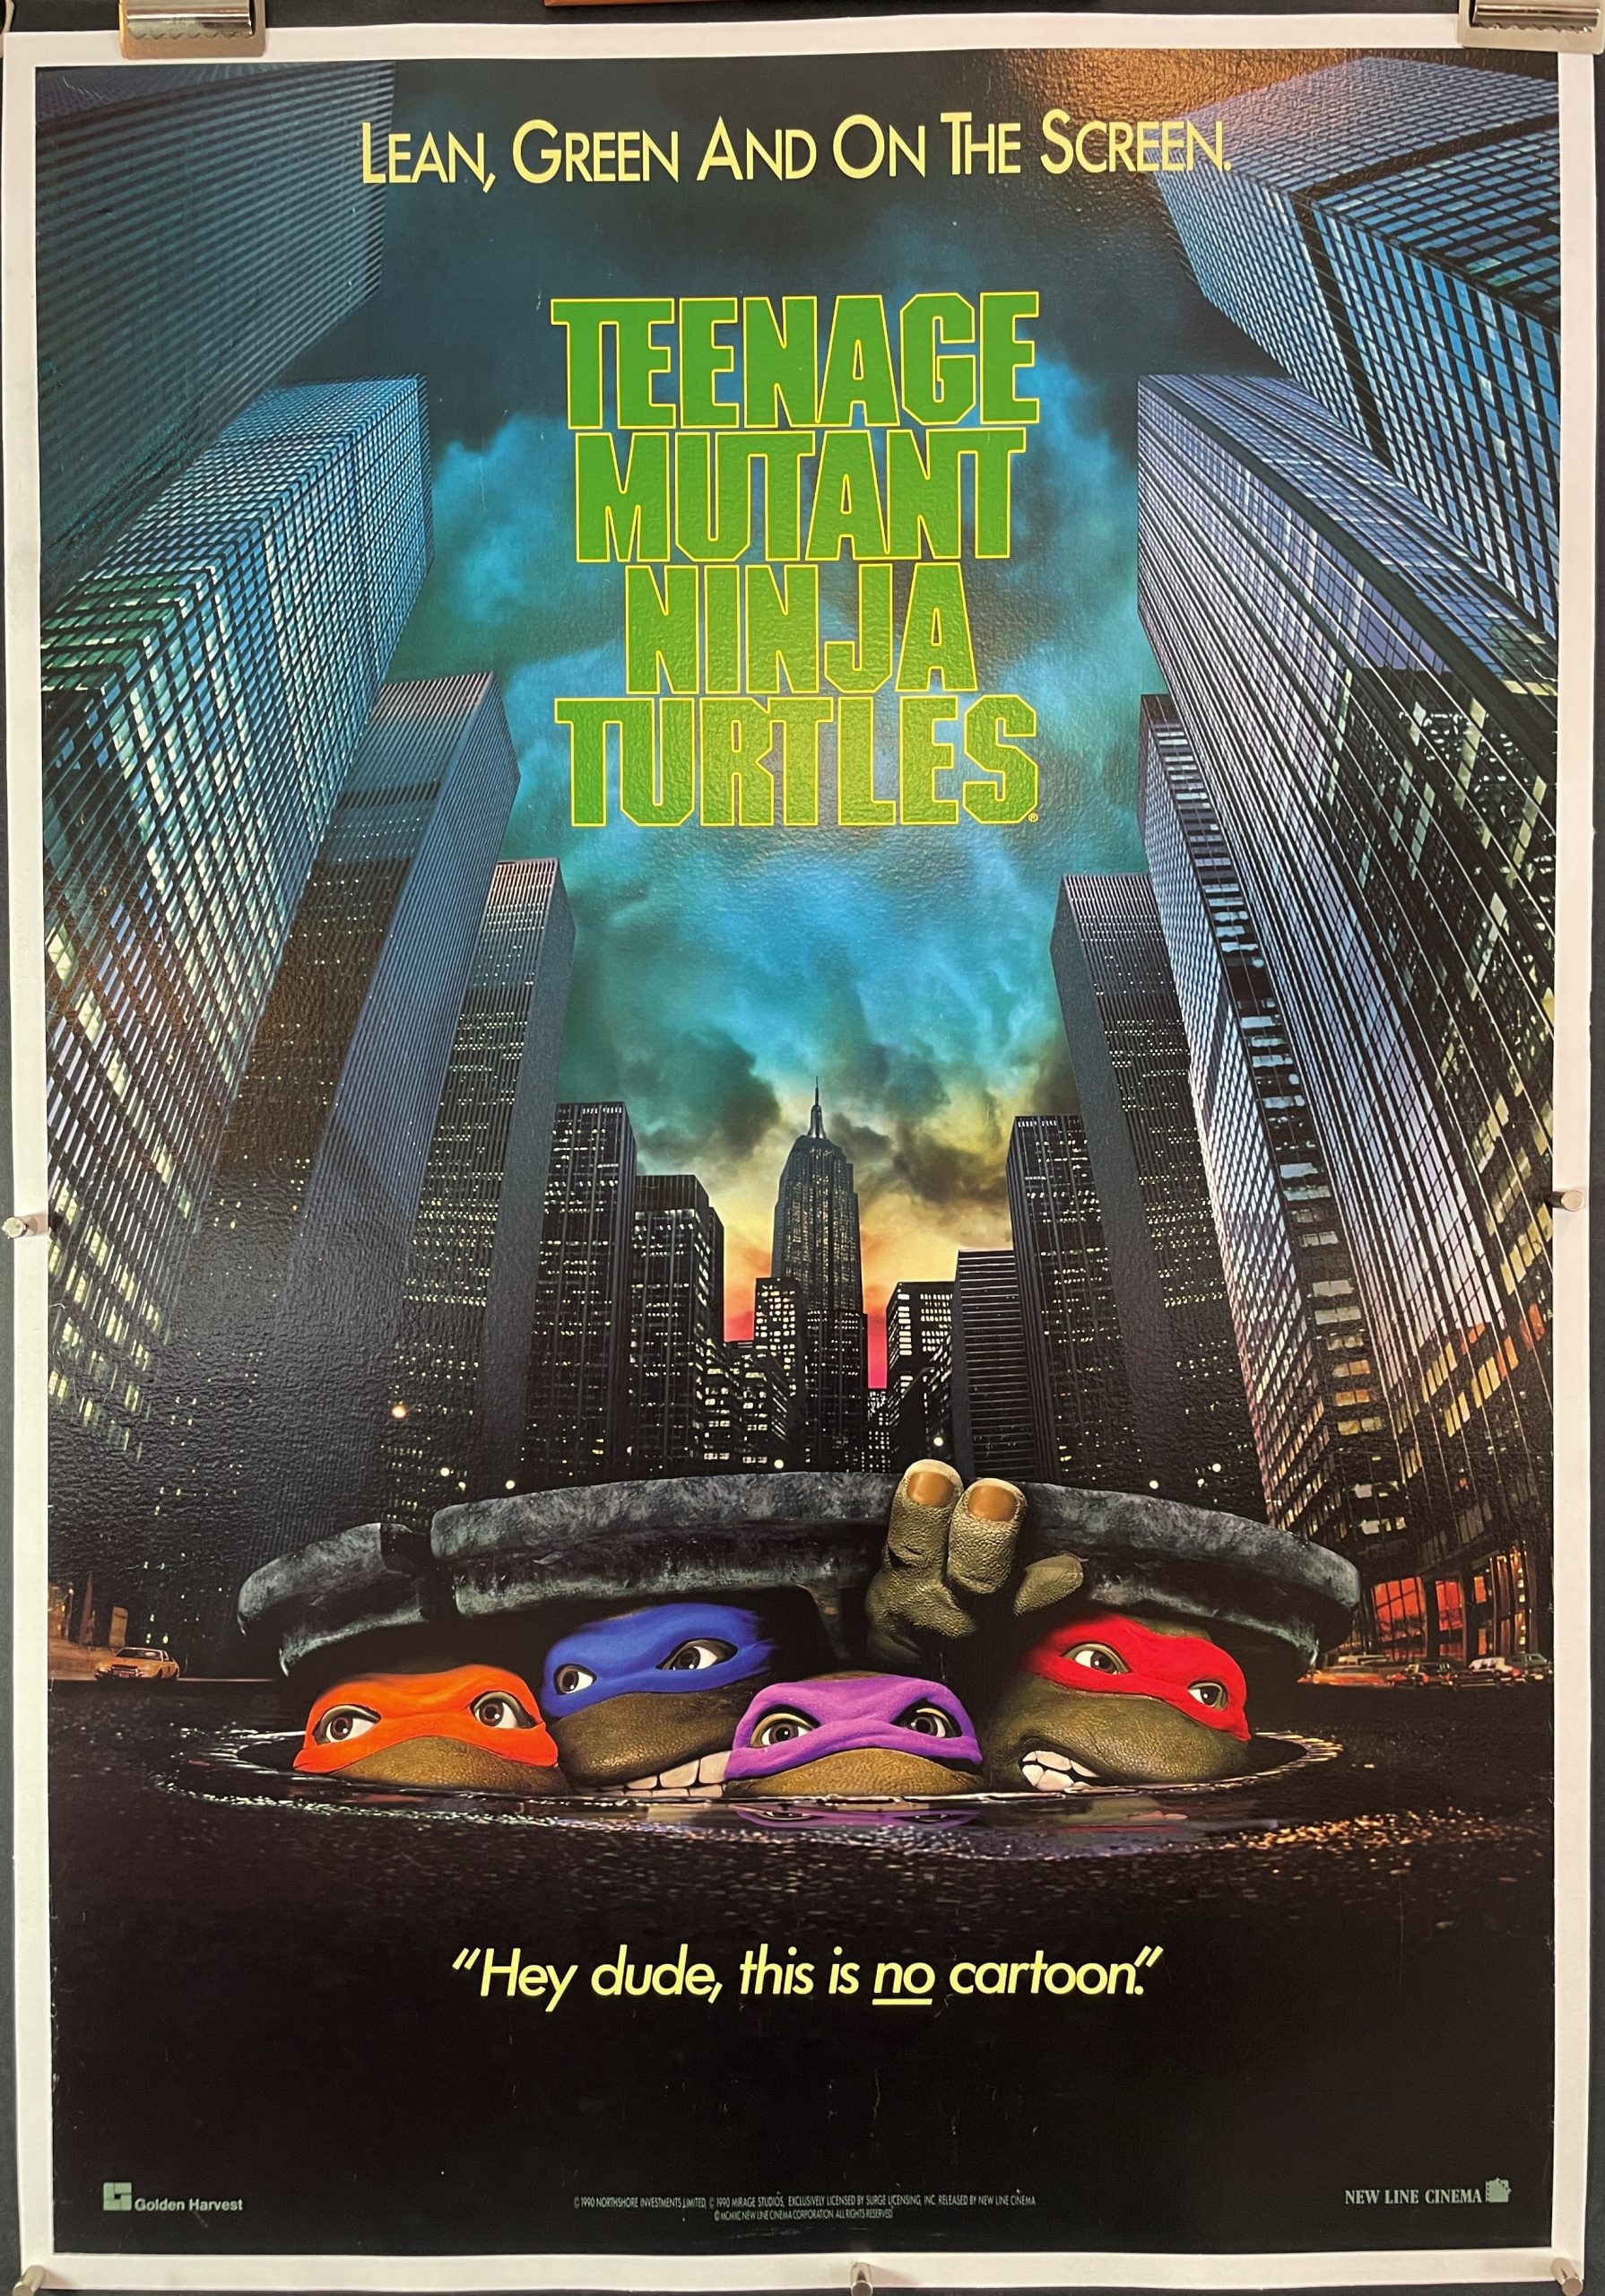 American Thrift X Teenage Mutant Ninja Turtles Poster V1 Vintage T